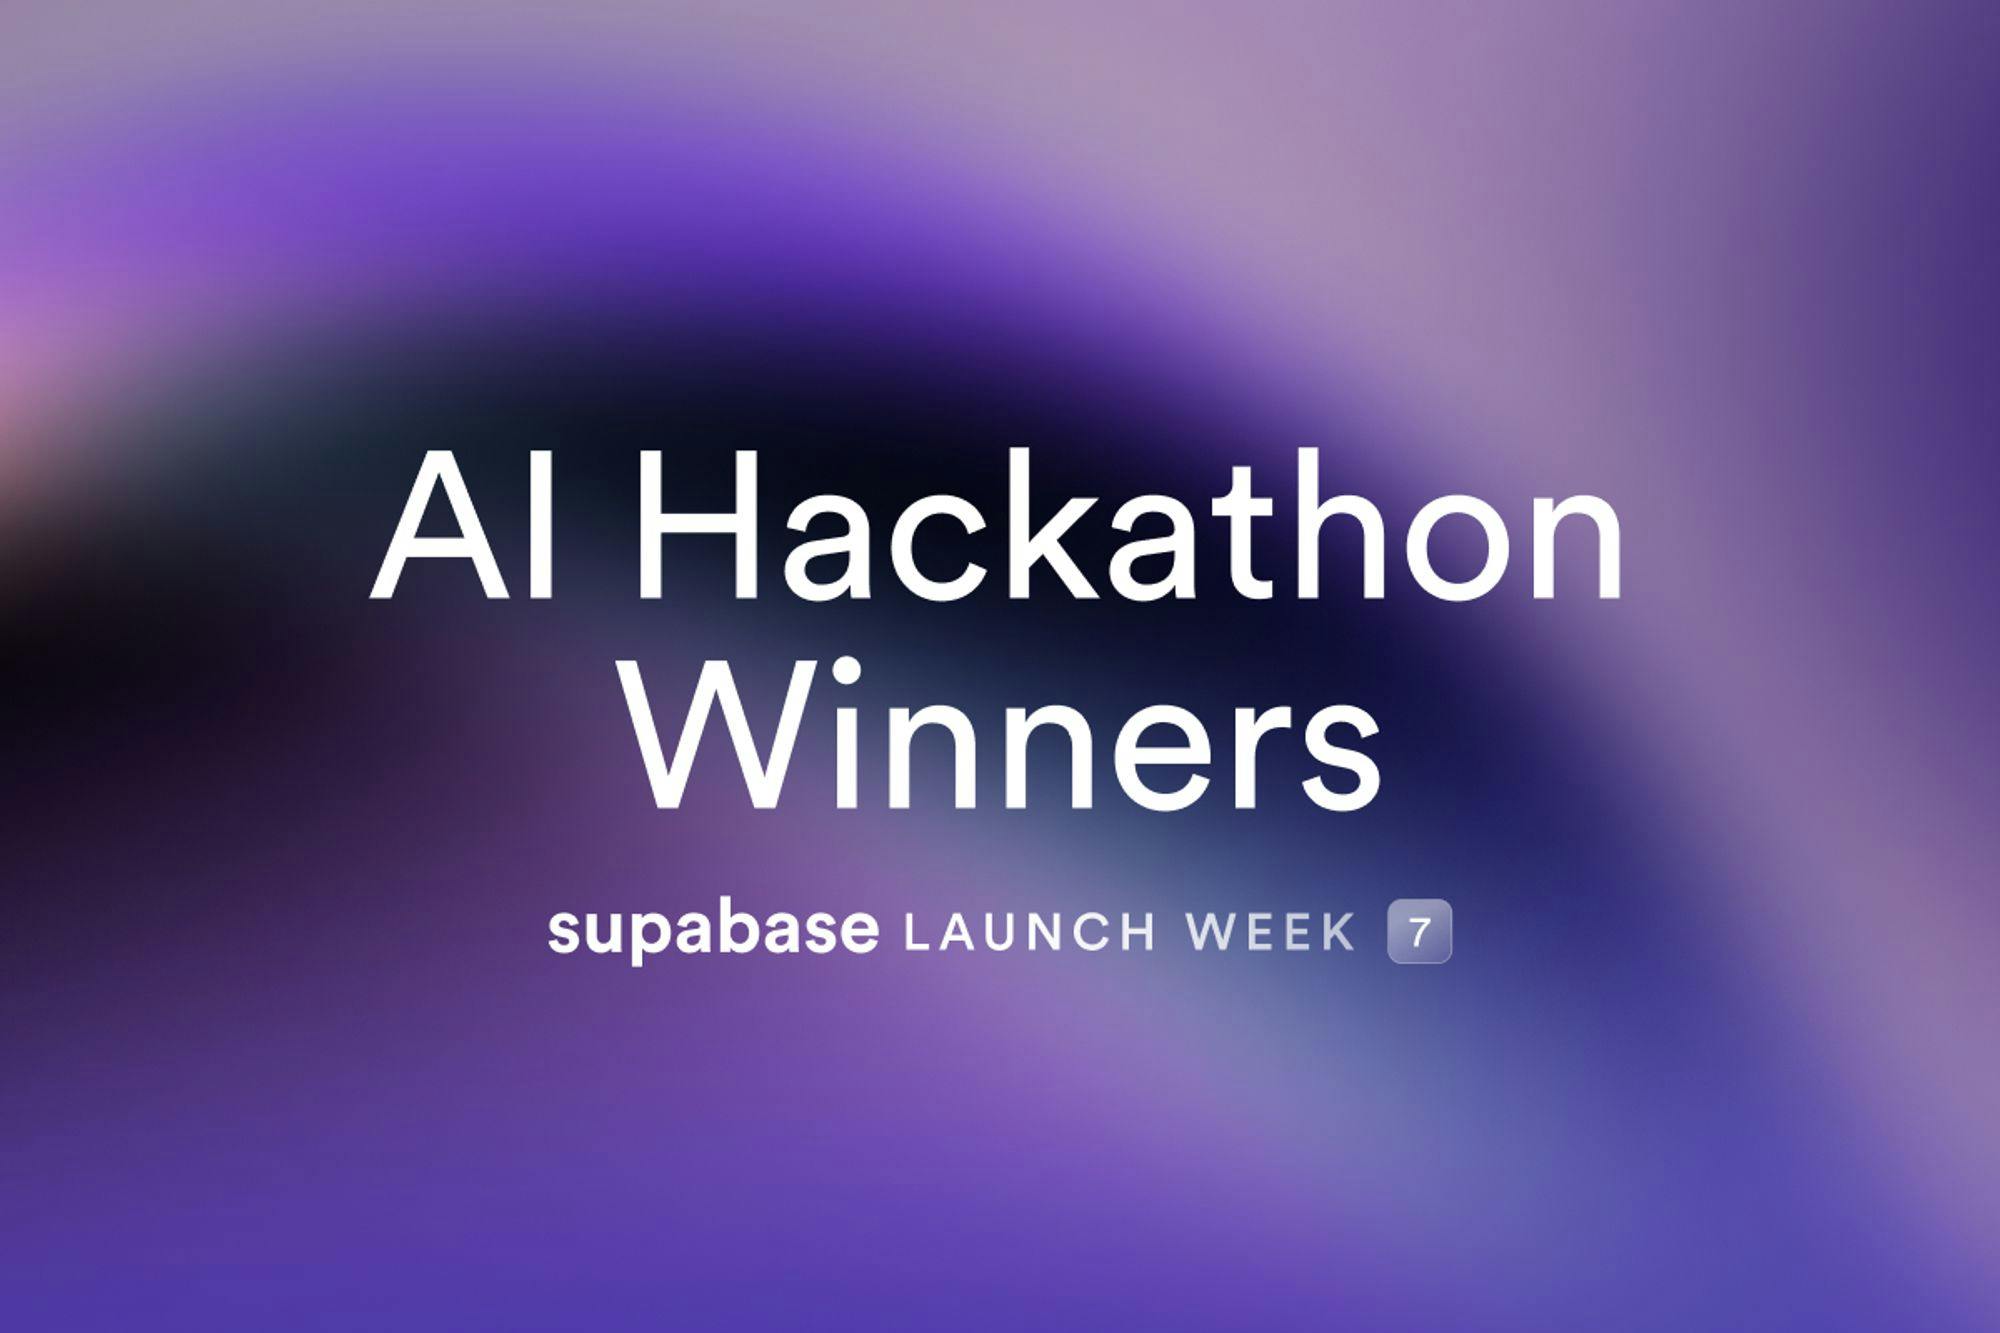 Launch Week 7 Hackathon Winners